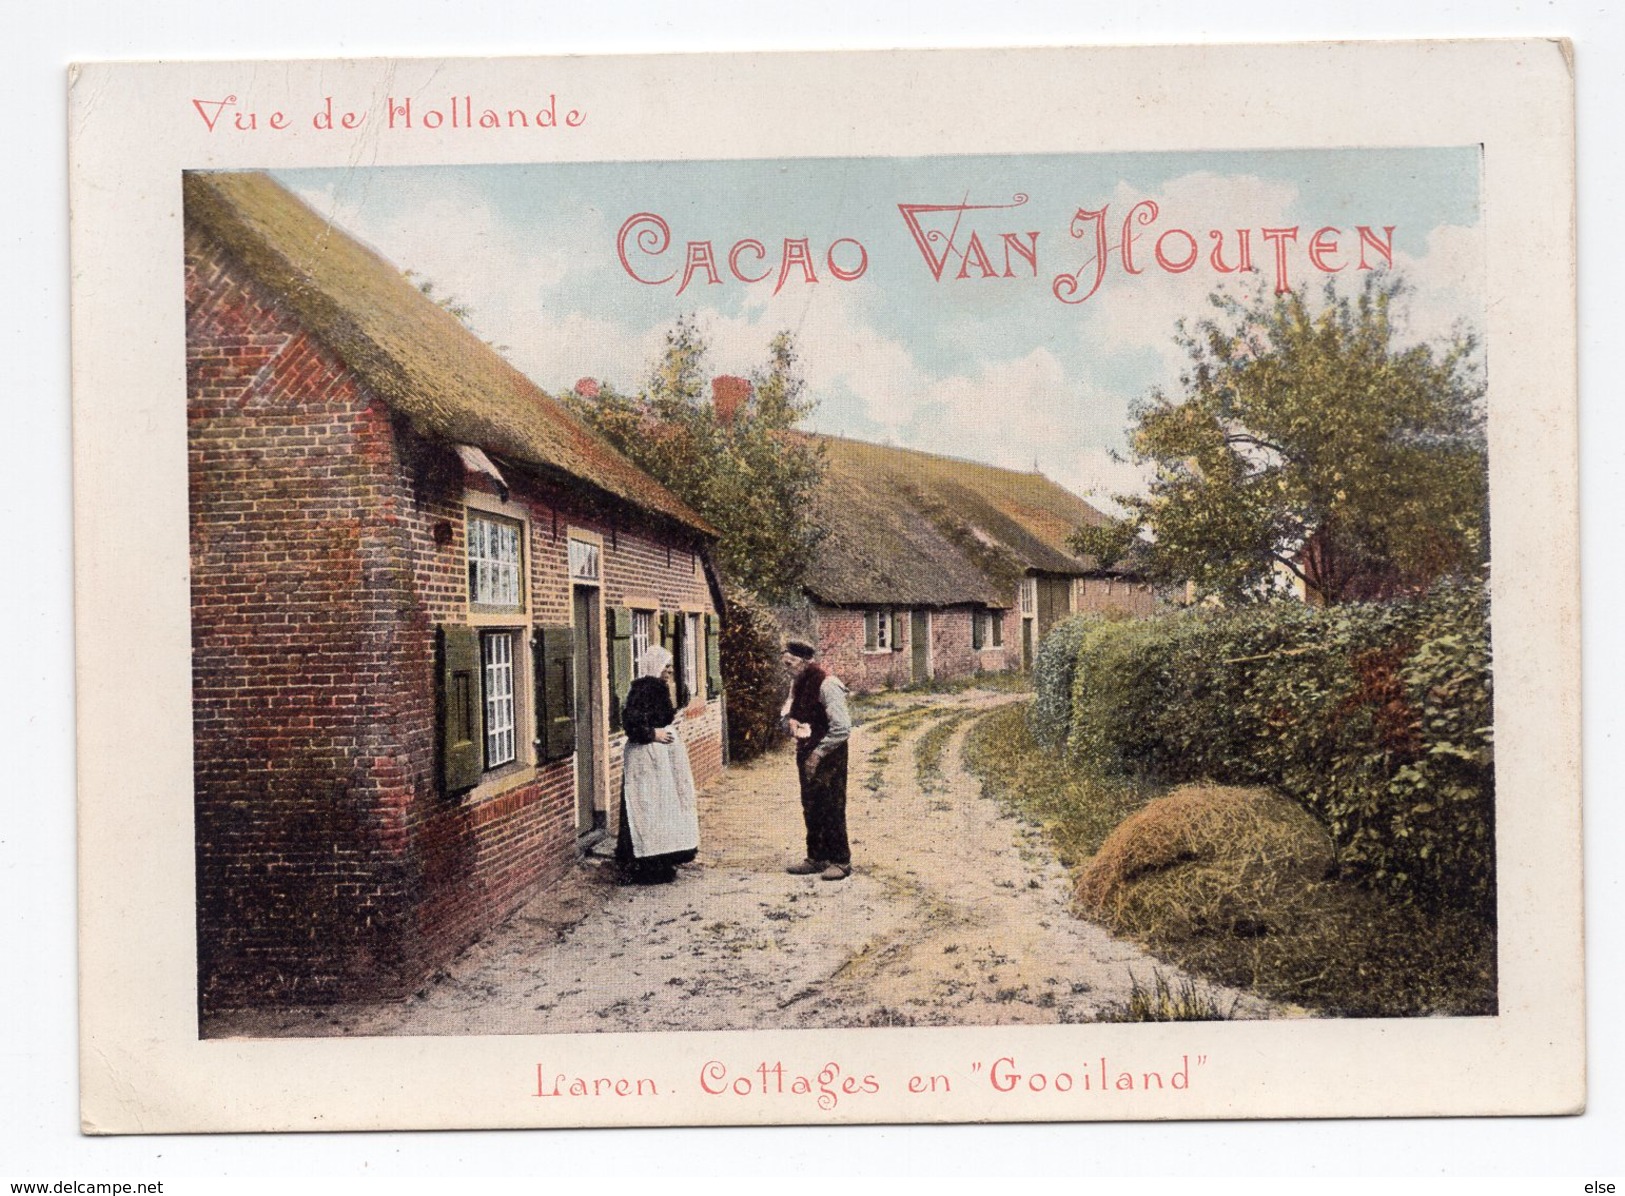 LIAREN  COLLAGE EN GOOILAND  CHROMO CACAO VAN HOUTEN VILLE DE HOLLANDE - Van Houten